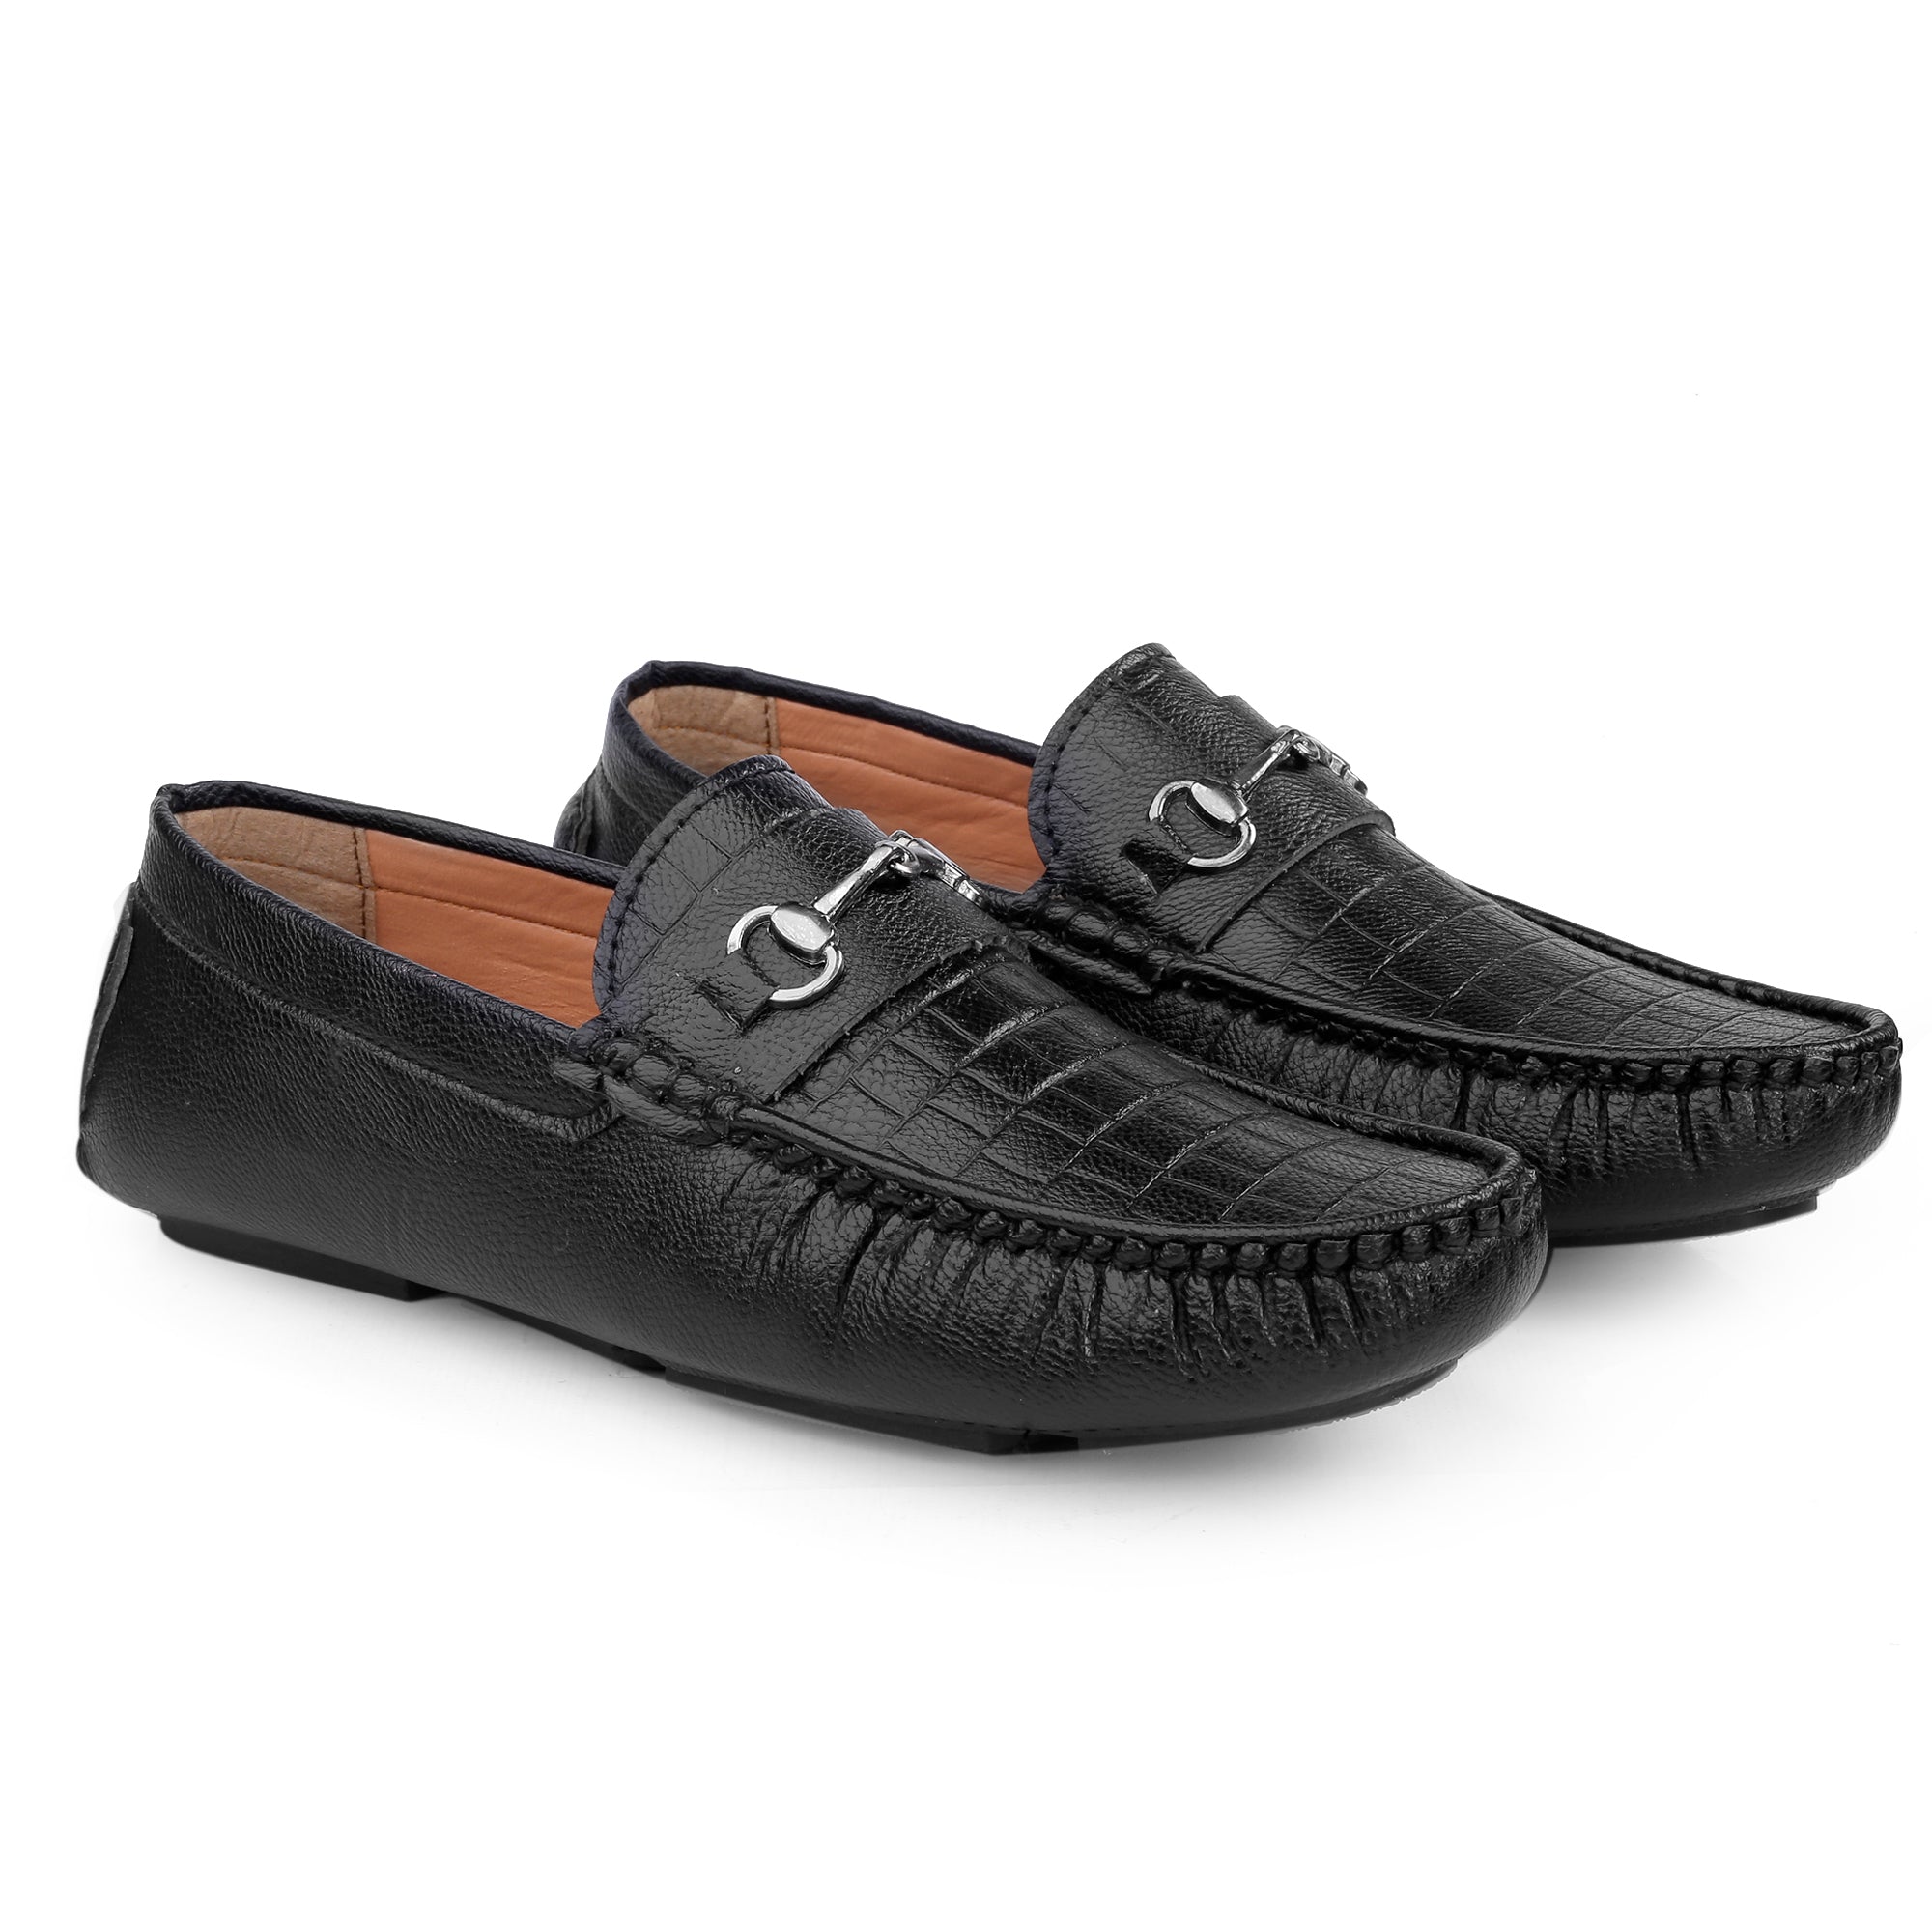 Mens Loafer - Buy Loafer for Men Online - Mochi Shoes